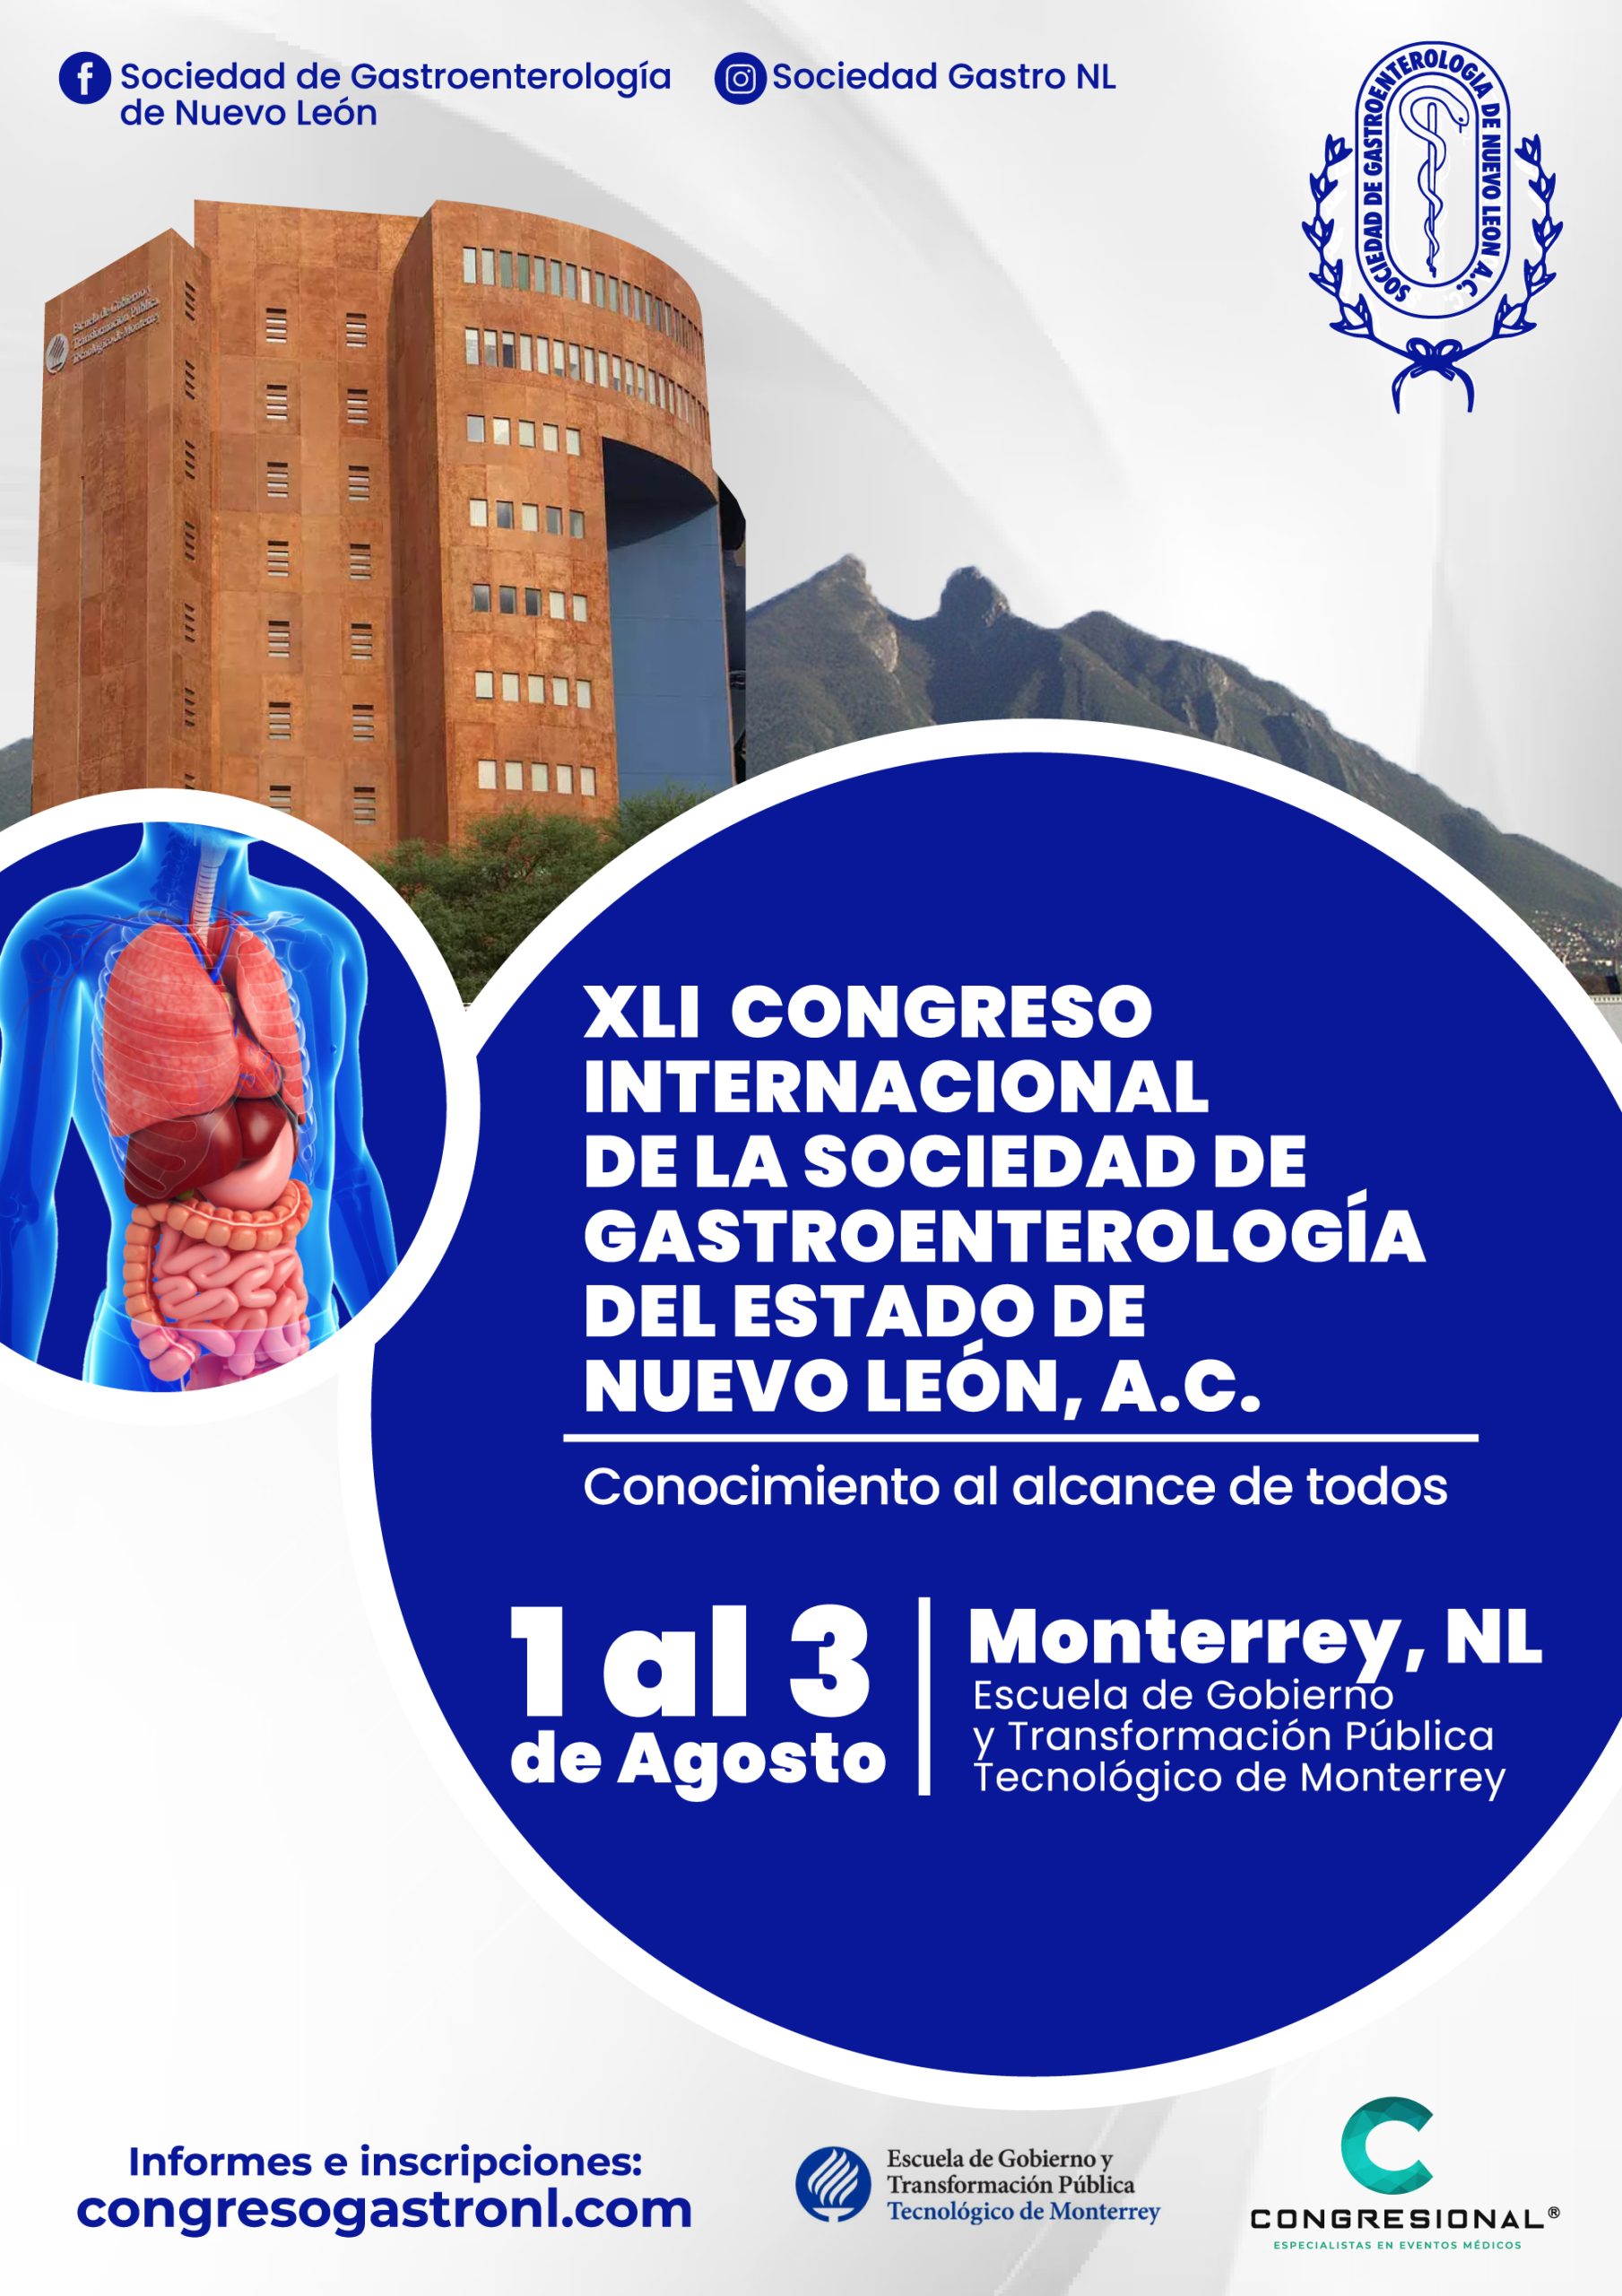 XLI Congreso Internacional de la Sociedad de Gastroenterología del Estado de Nuevo León